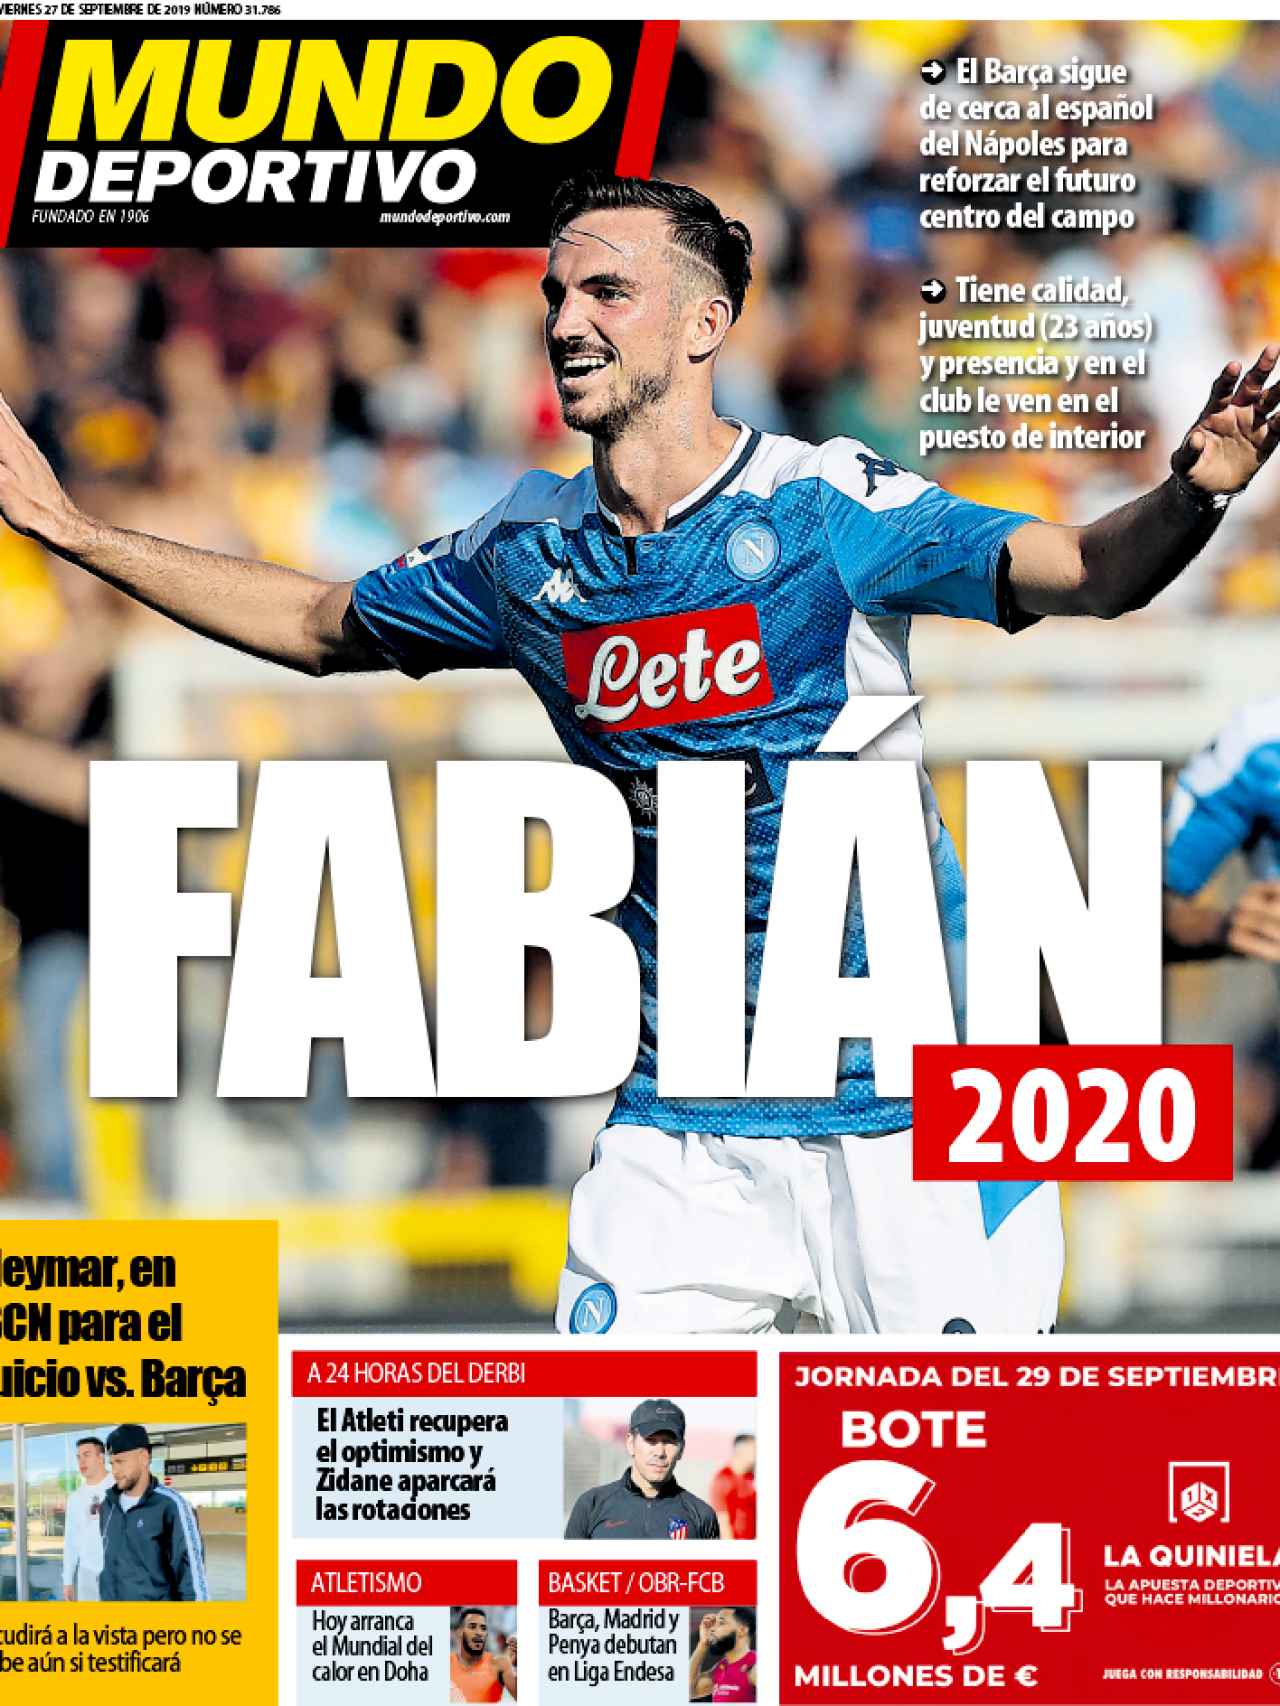 La portada del diario Mundo Deportivo (27/09/2019)